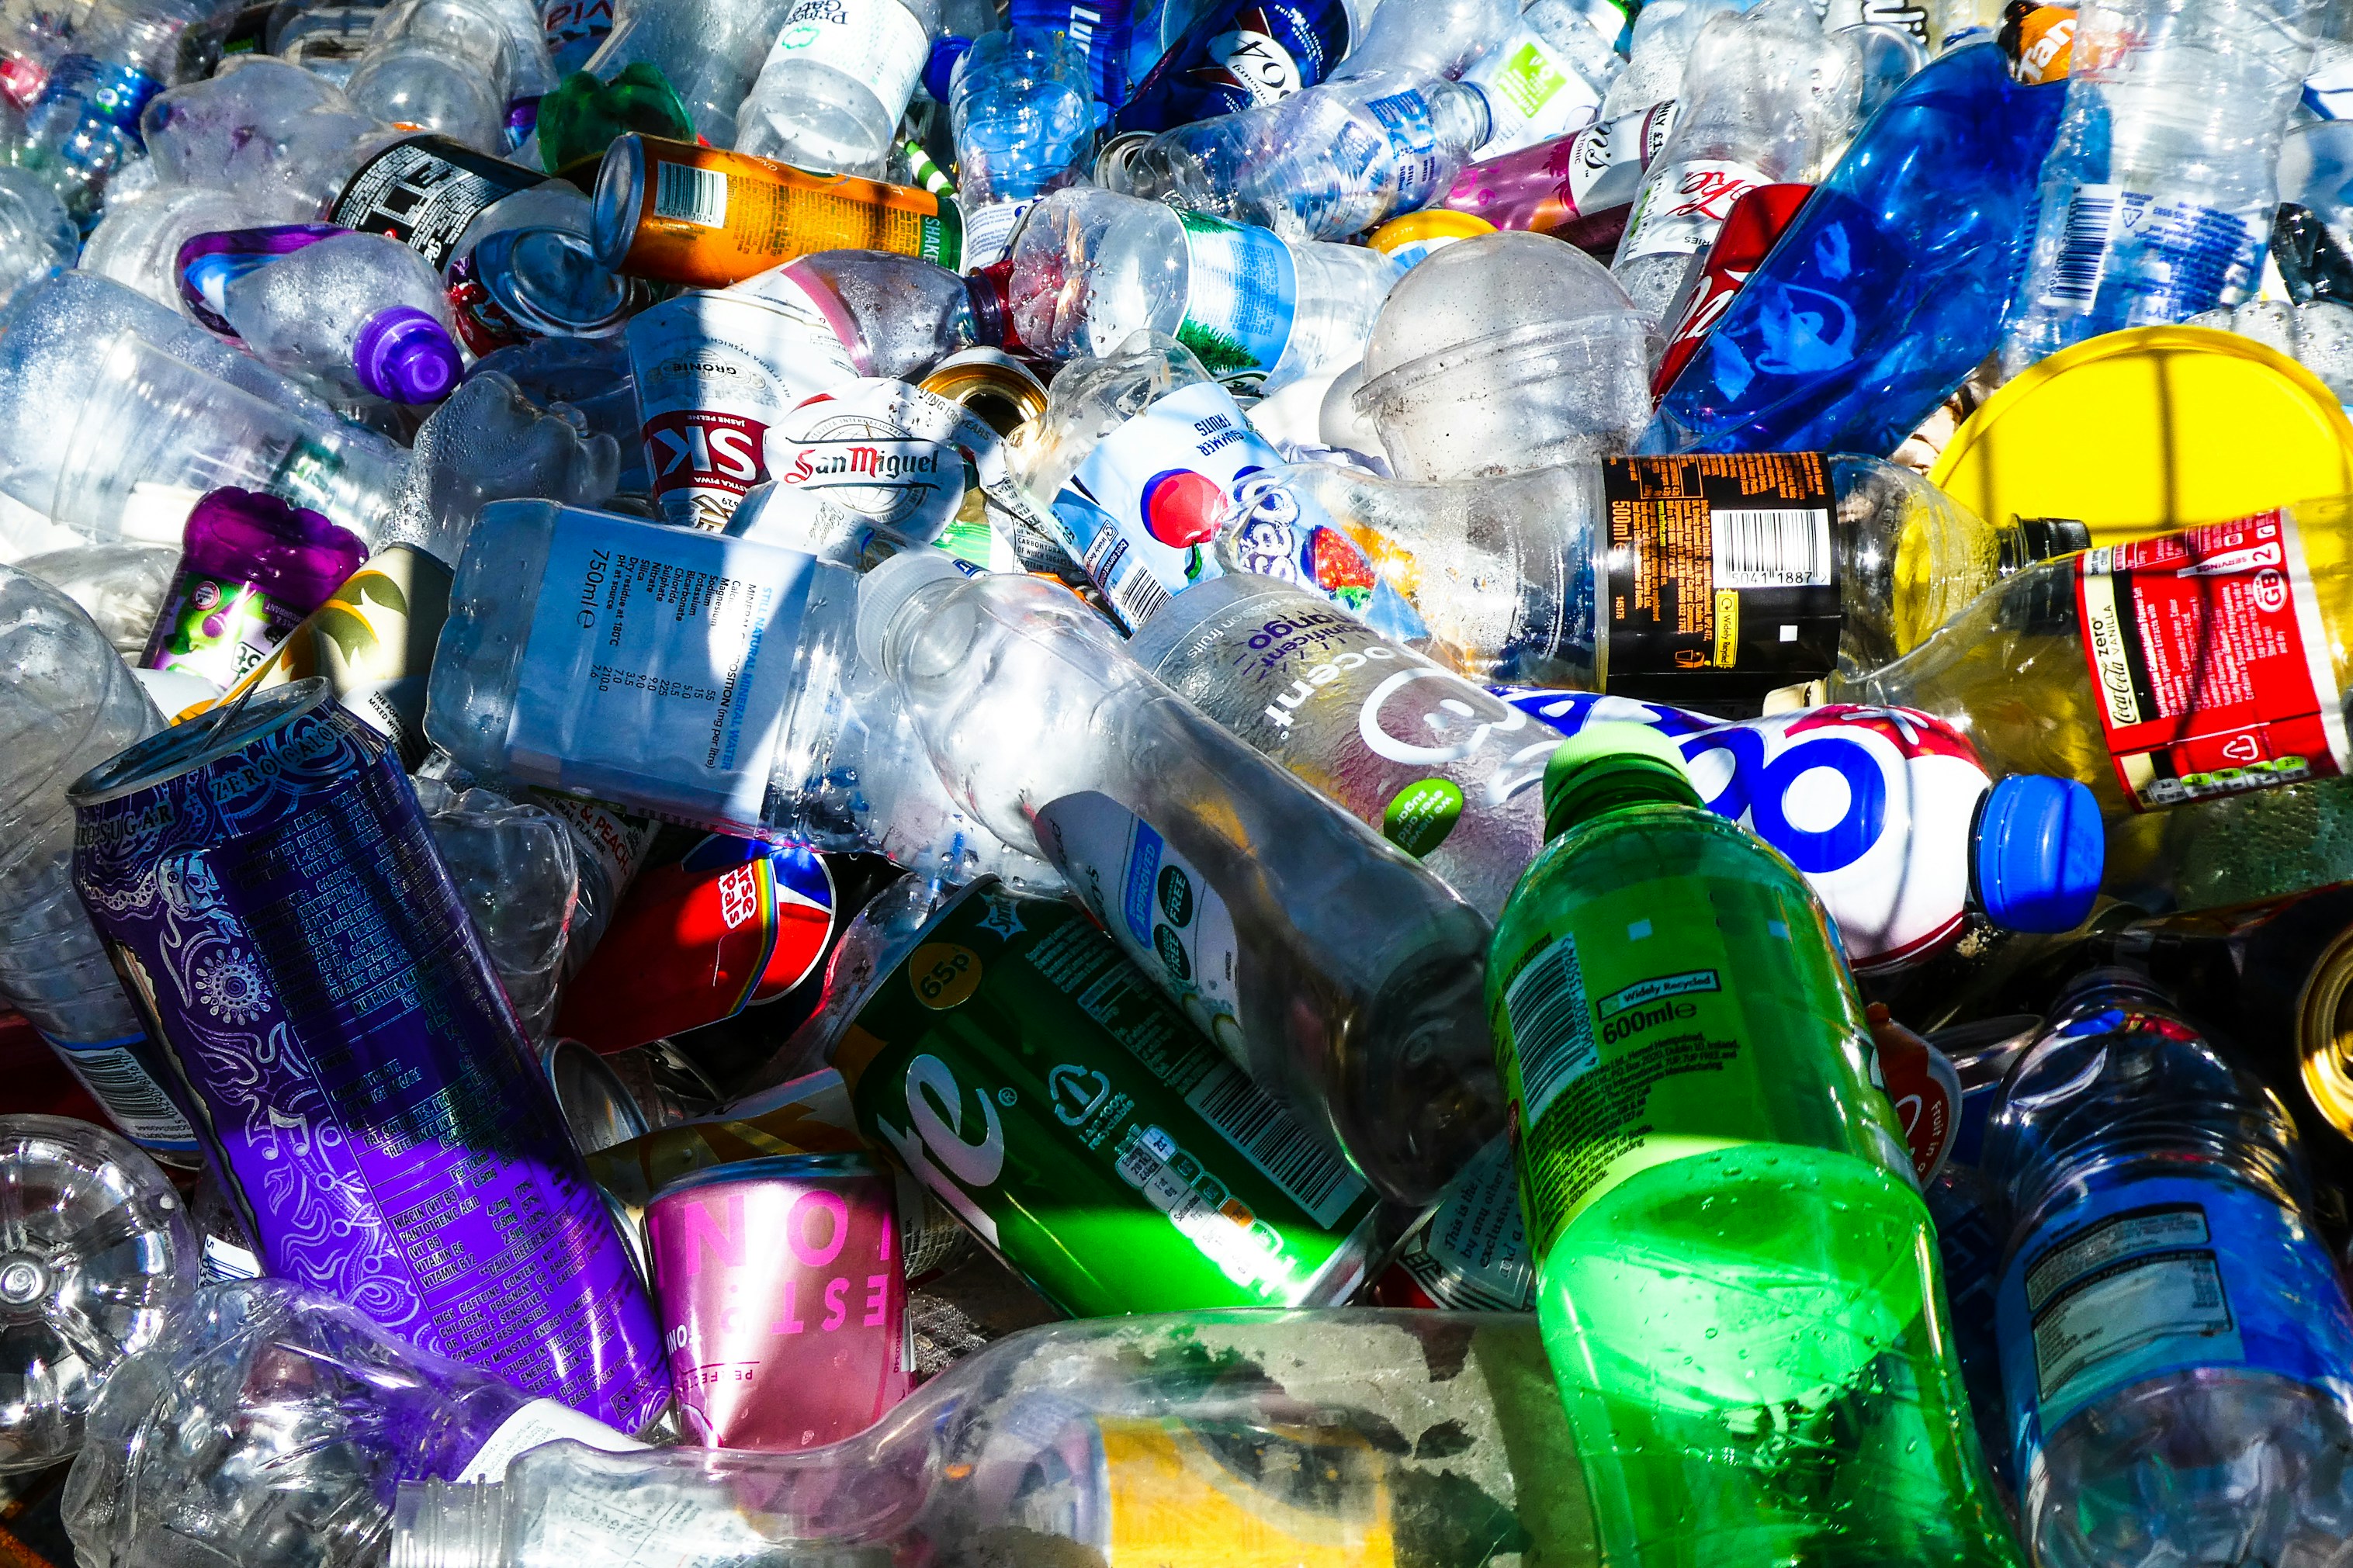 マイクロプラスチックによる健康被害